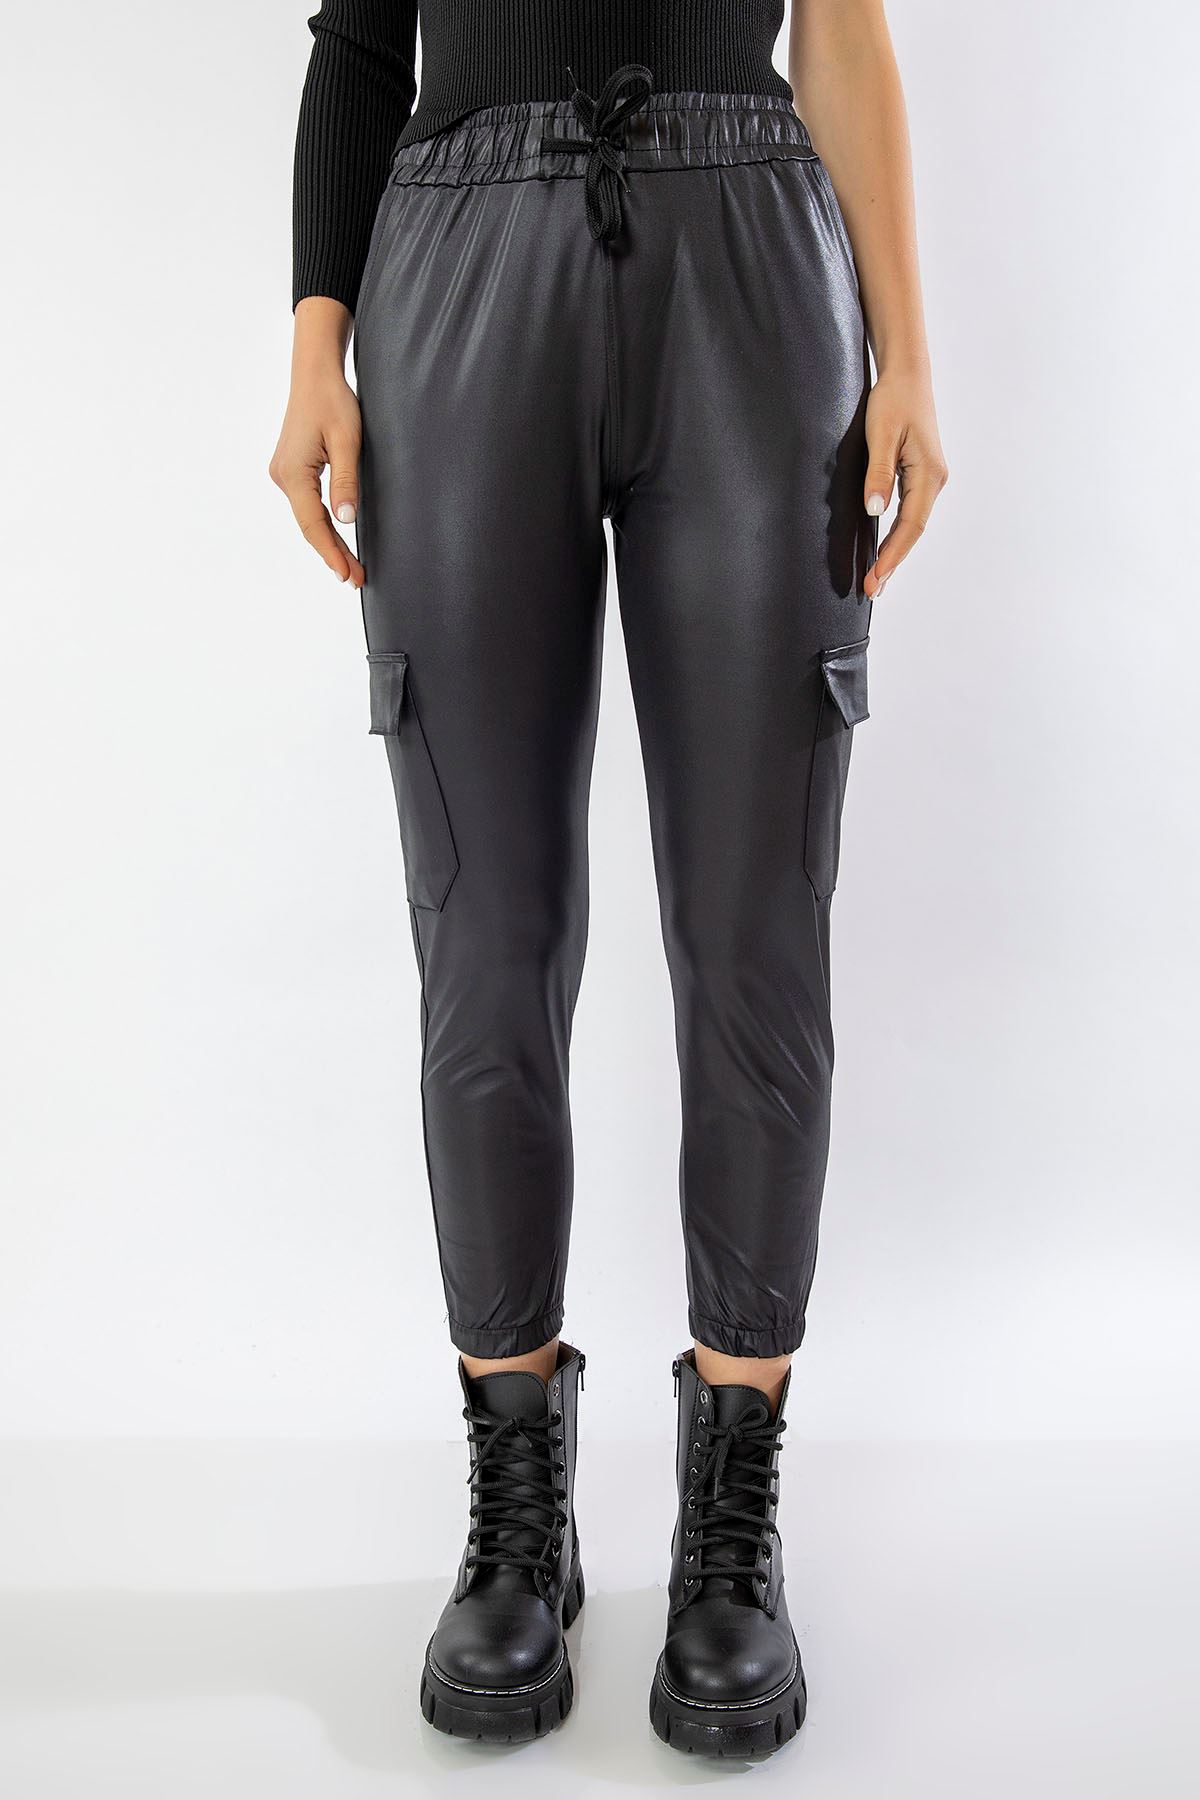 21K135-001-01 Спортивные штаны с кожаным эффектом-Чёрный - Чёрный